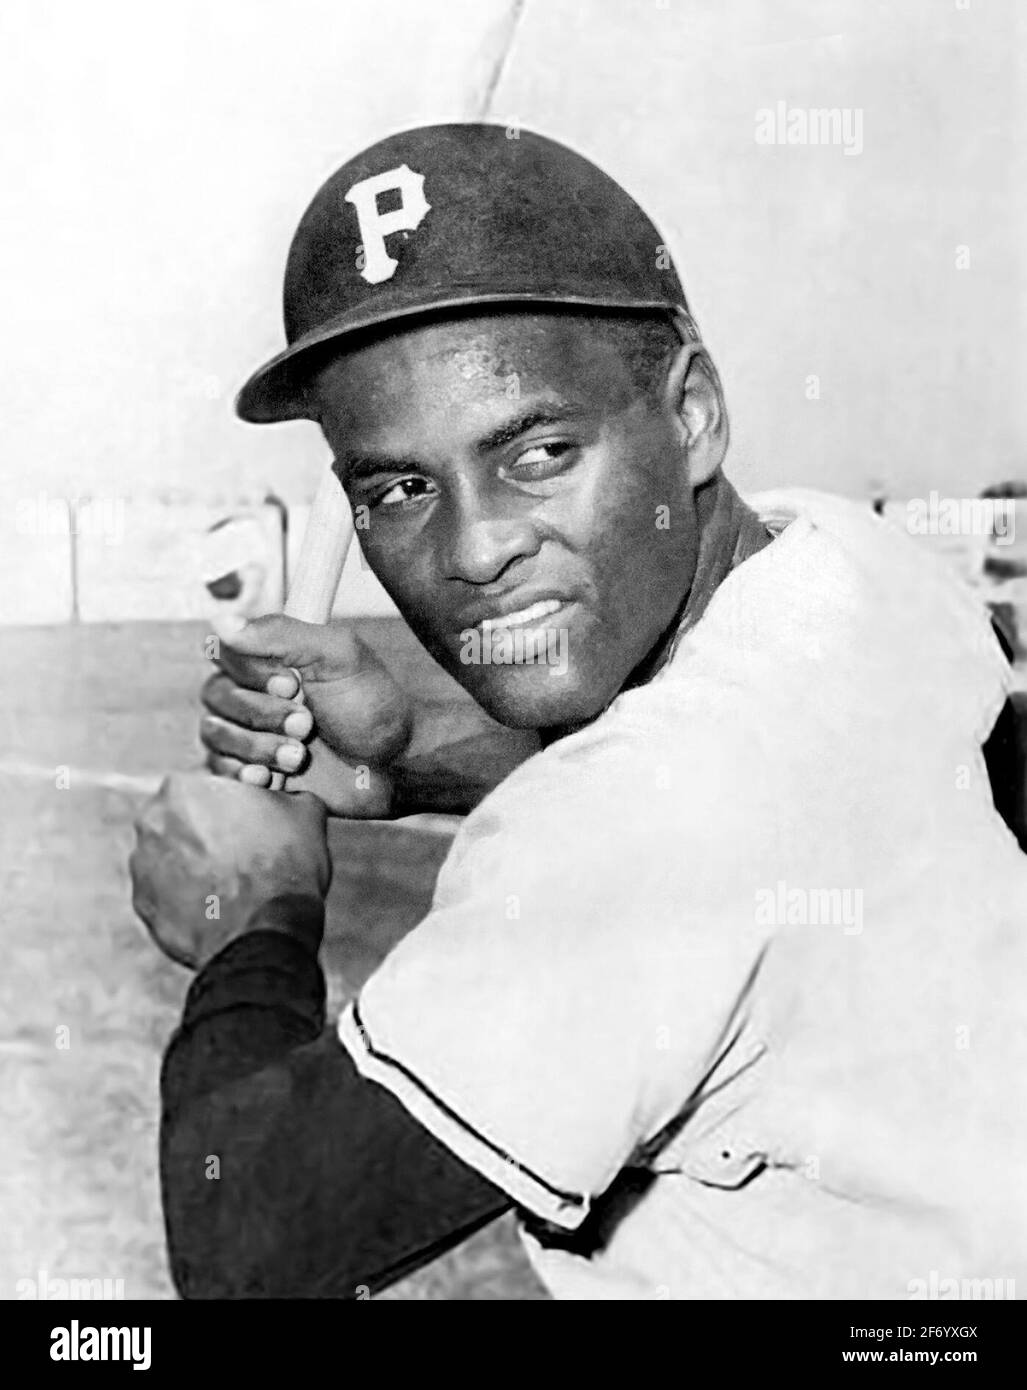 Roberto Clemente. Portrait du joueur de baseball portoricain, Roberto Enrique Clemente Walker (1934-1972), carte de baseball des Pirates de Pittsburgh, 1965 Banque D'Images